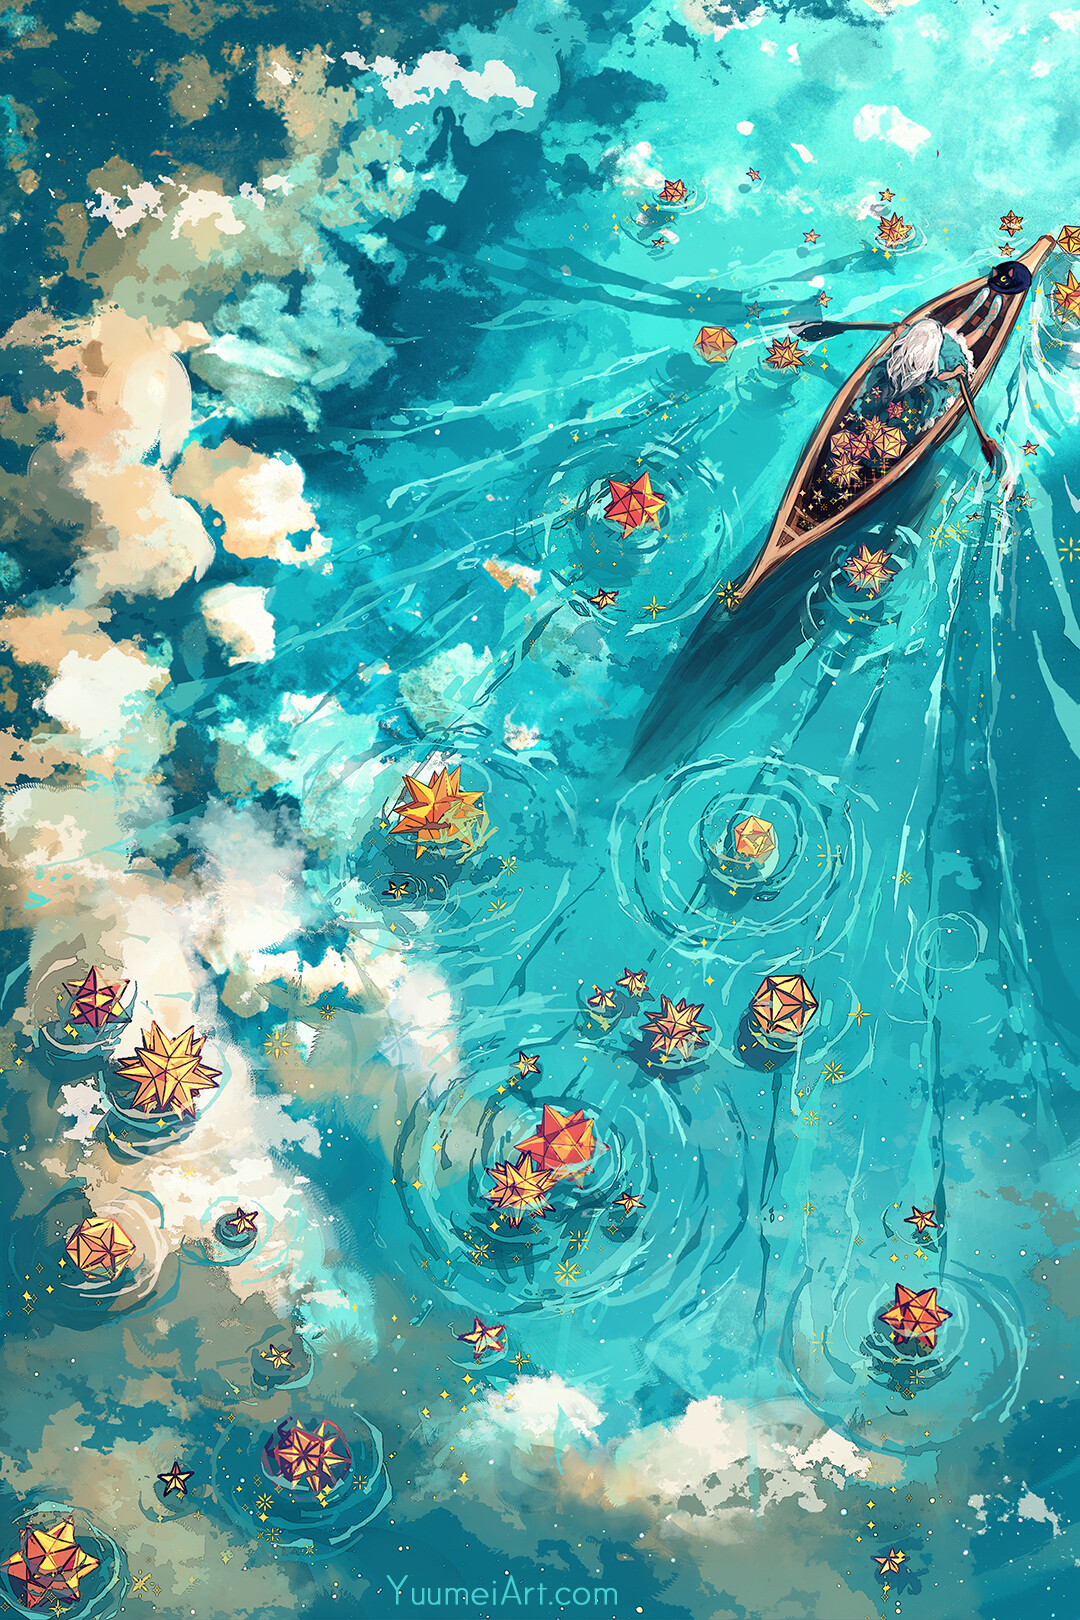 General 1080x1620 artwork digital art boat river nature Yuumei water